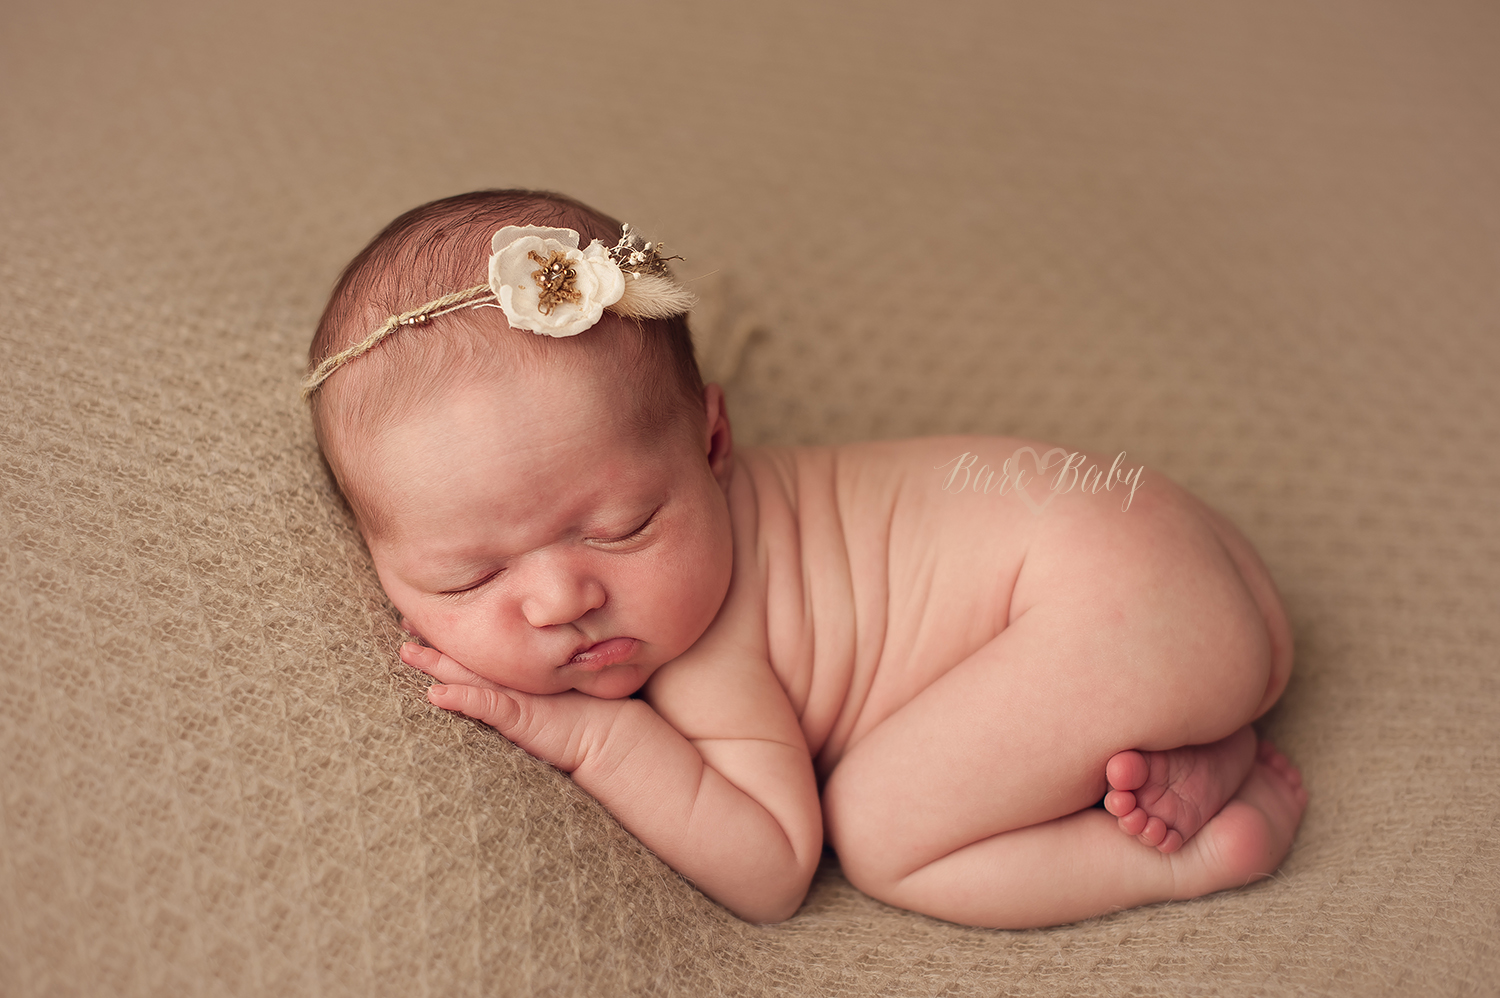 gahanna-ohio-newborn-photographer-bare-baby-photography.jpg